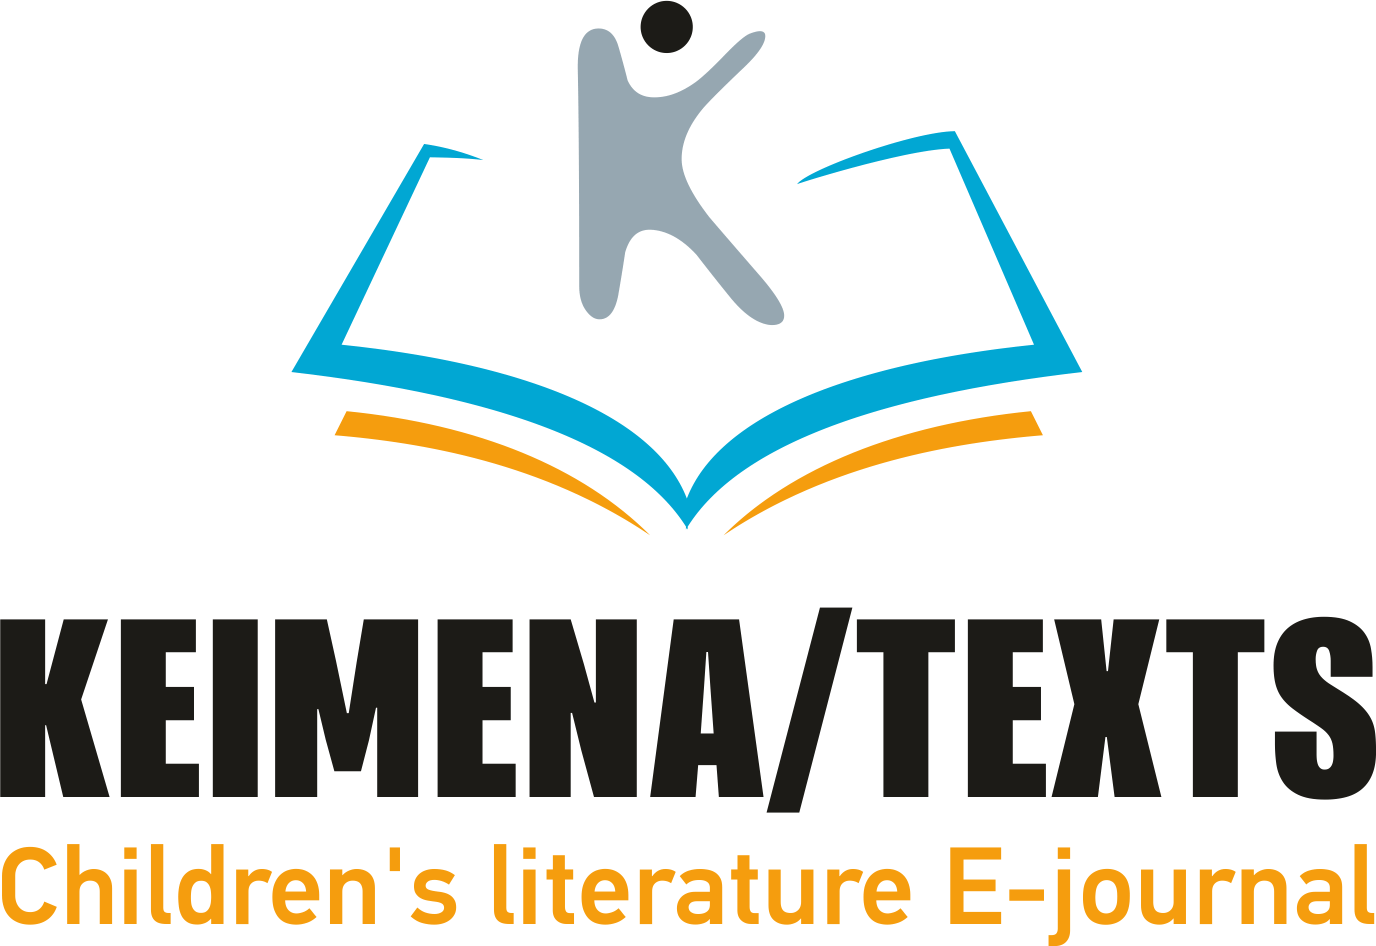 ΚΕΙΜΕΝΑ - Logo_New